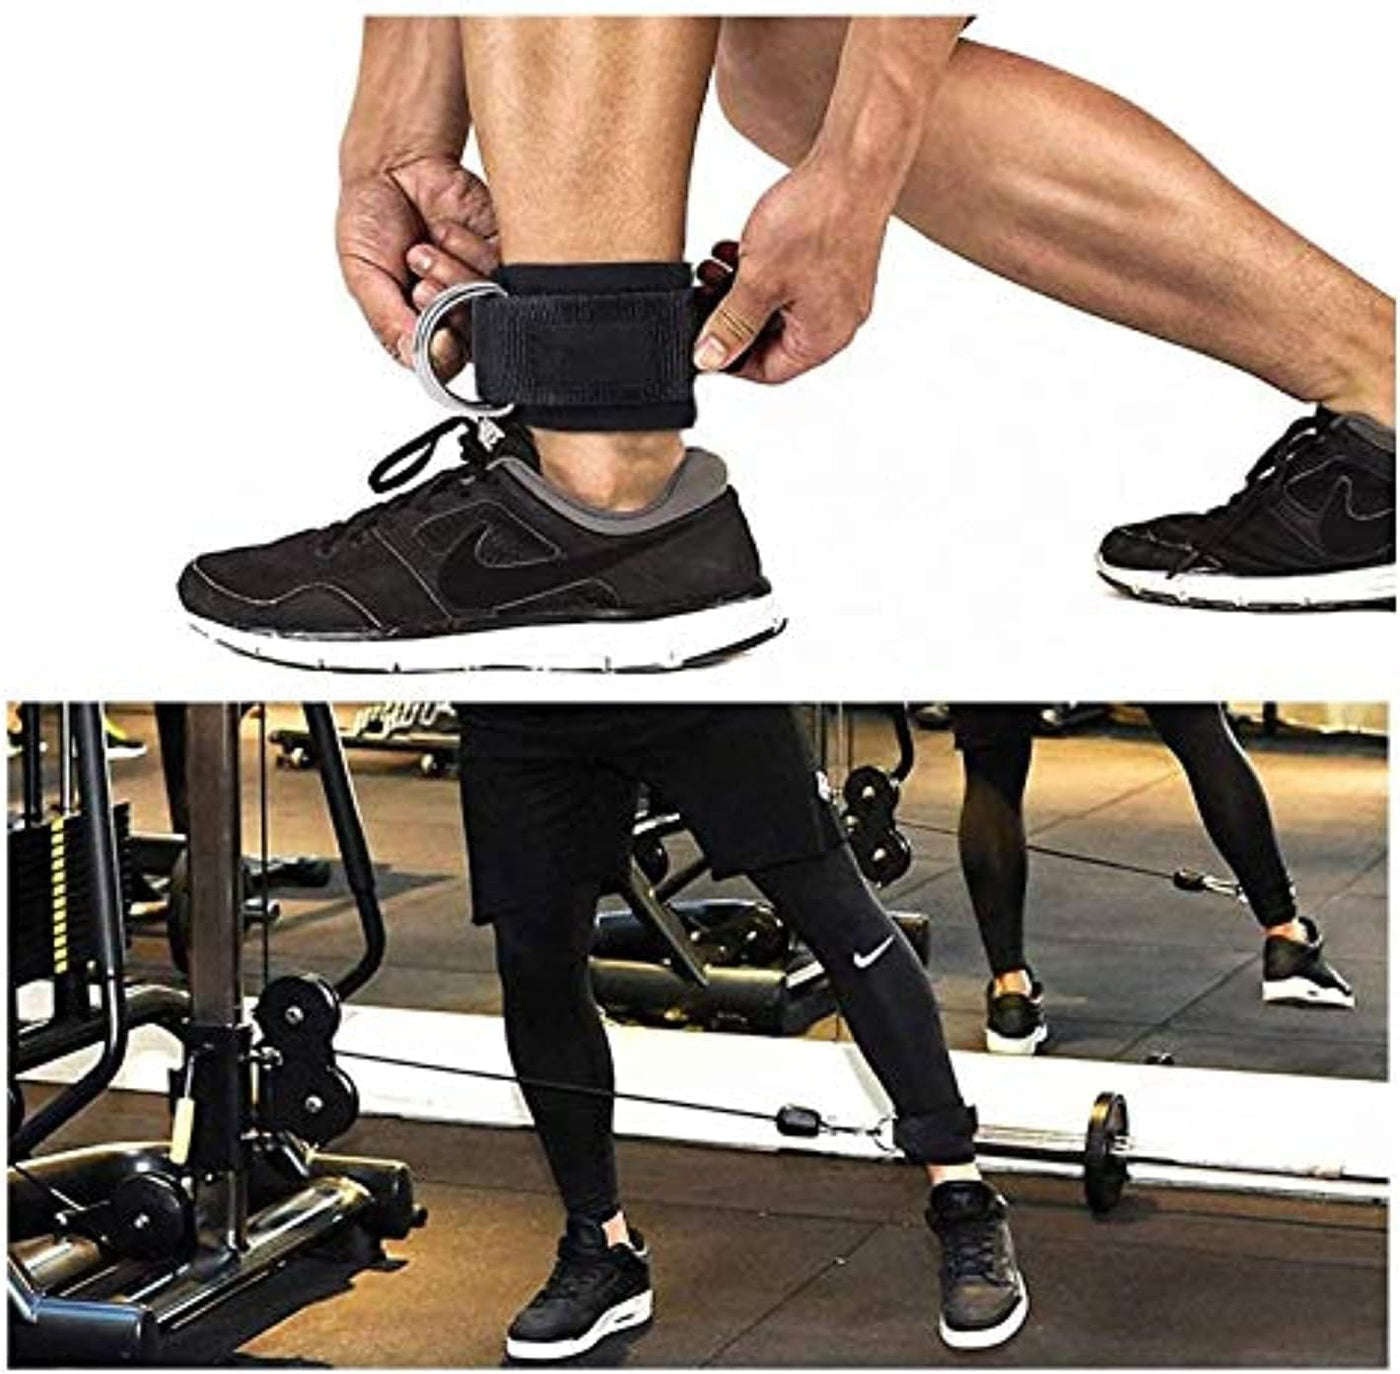 Dubkart Exercise equipment 2 PCS Gym Exercise Workout Fitness Neoprene Ankle Straps